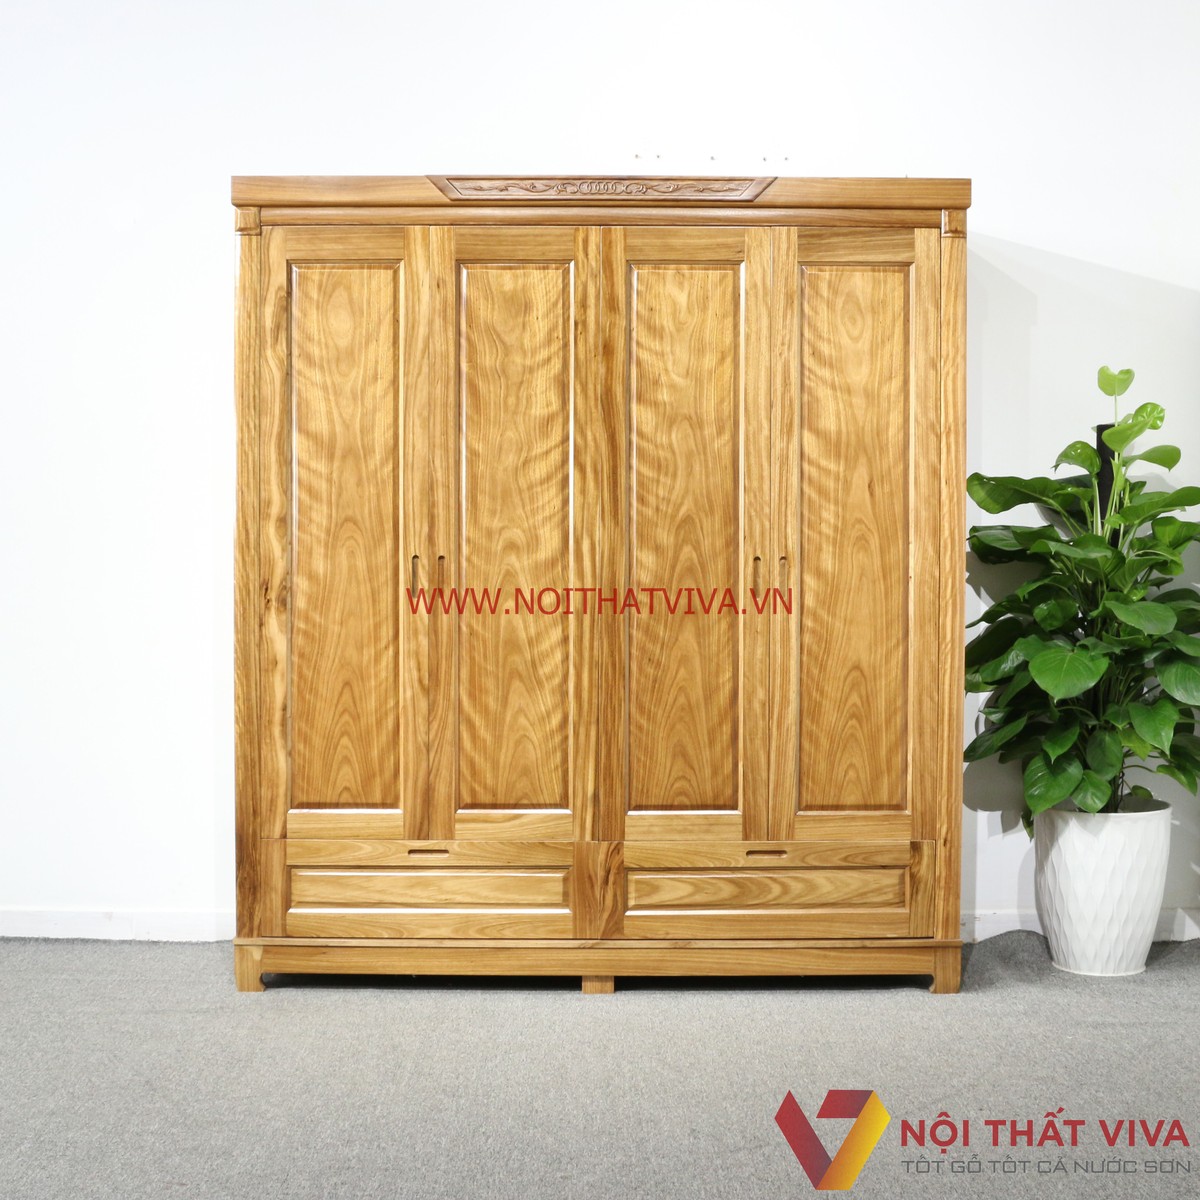 Top mẫu tủ quần áo đẹp bằng gỗ tự nhiên giá xưởng tại TP.HCM